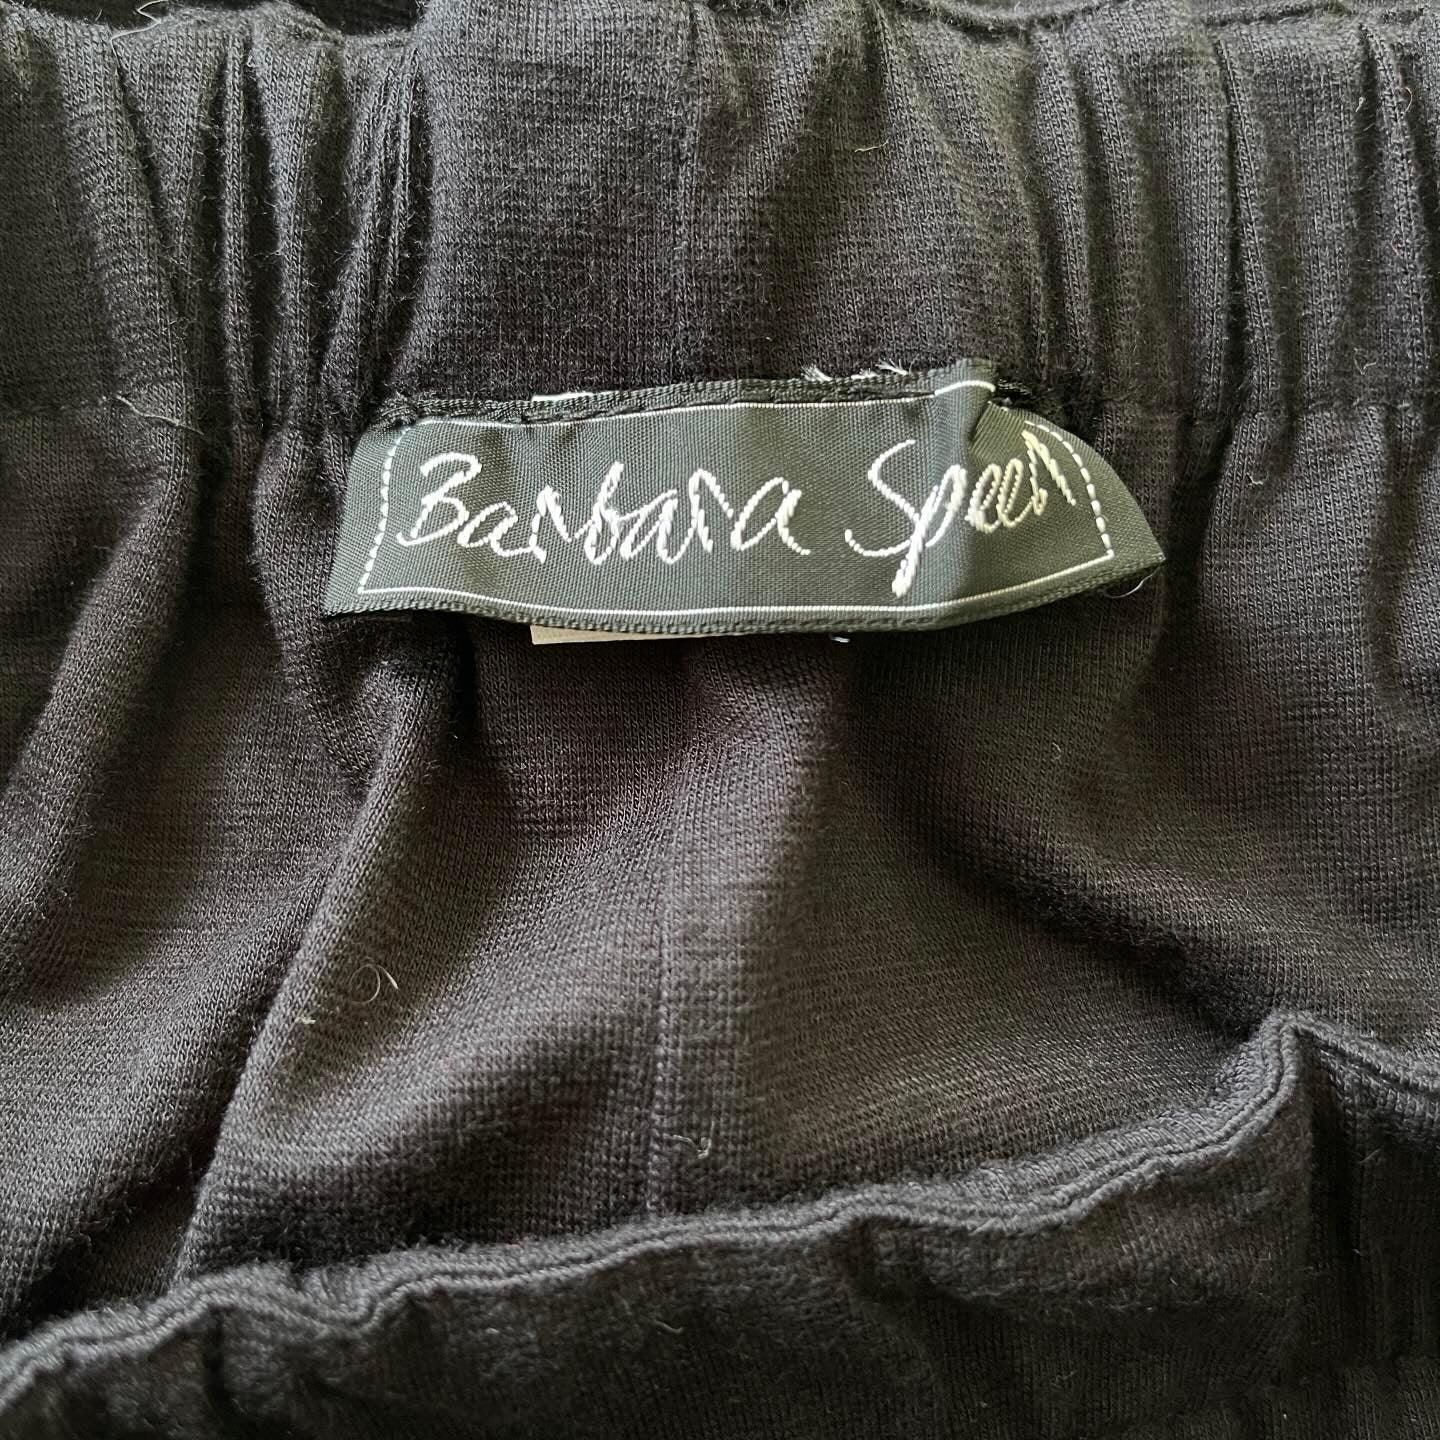 BARBARA SPEER - BARBARA SPEER New Skirt - AVVIIVVA.COM